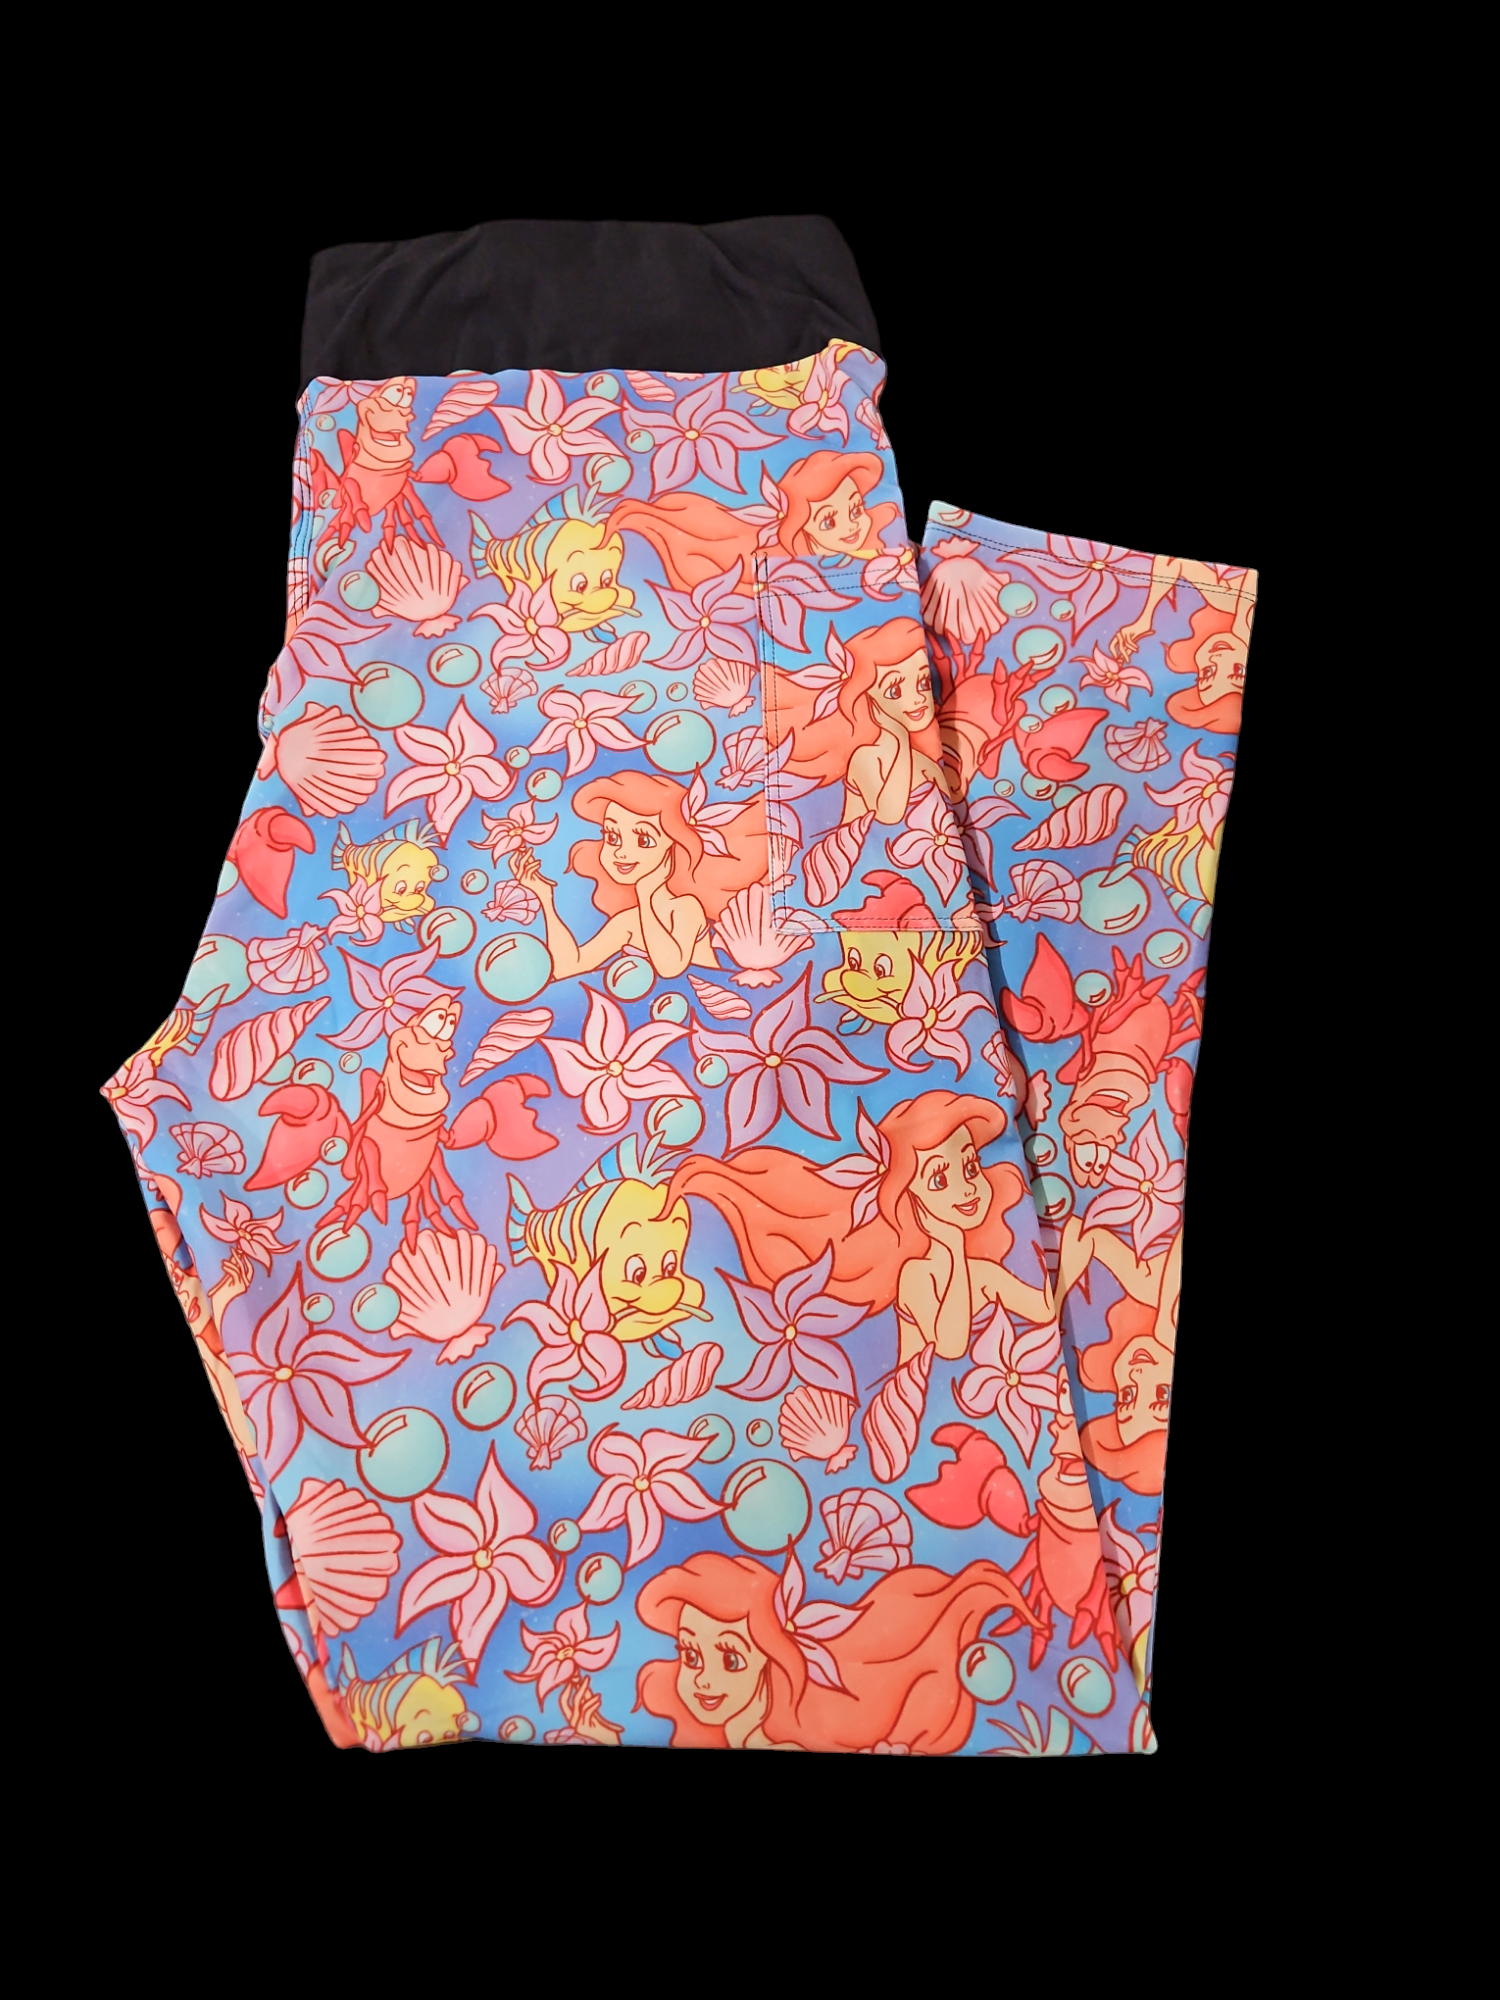 Pastel Mermaid Leggings - Designed By Squeaky Chimp T-shirts & Leggings